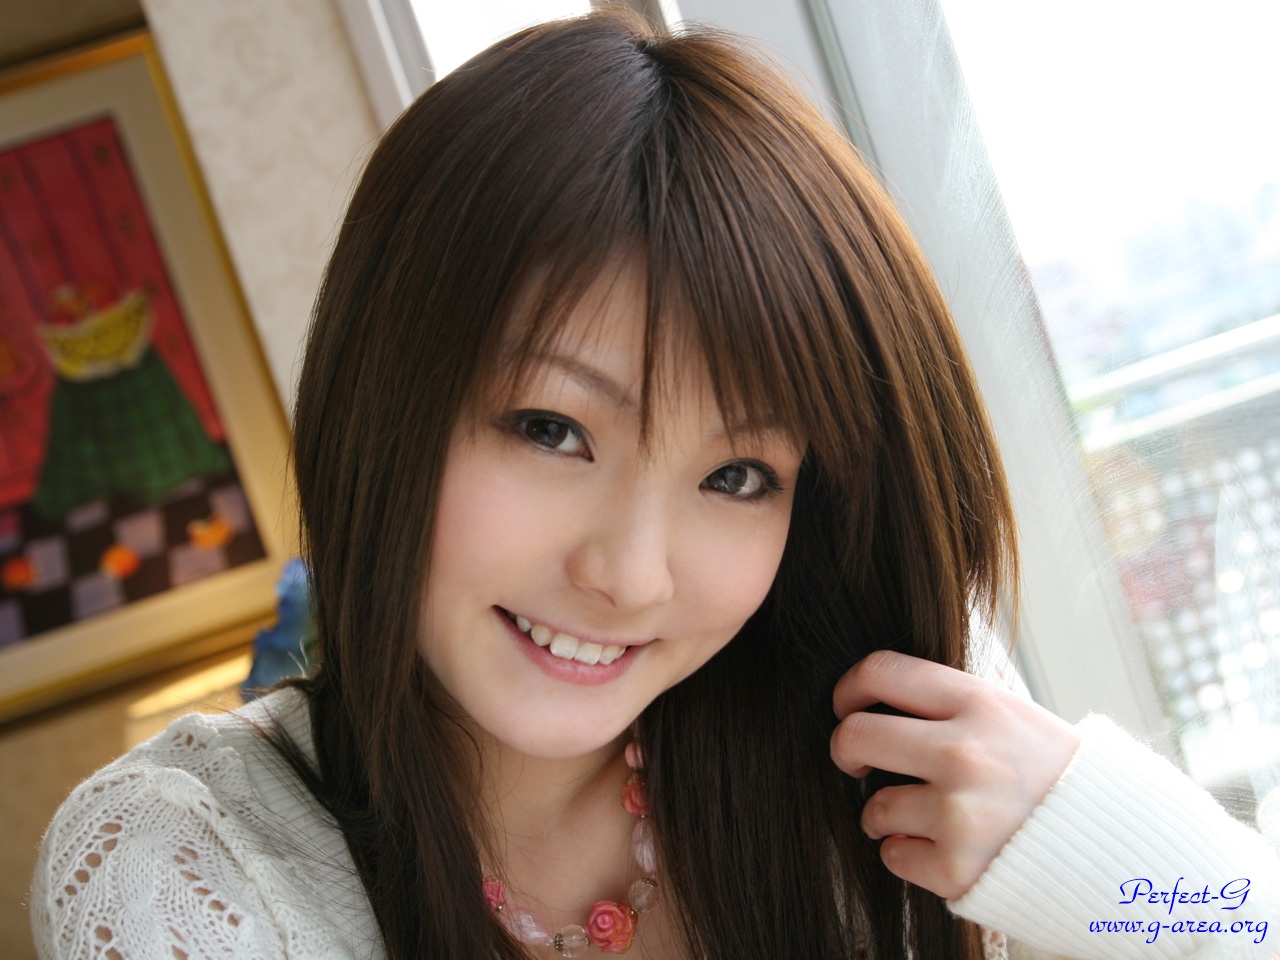 Haruko [Perfect G] 22